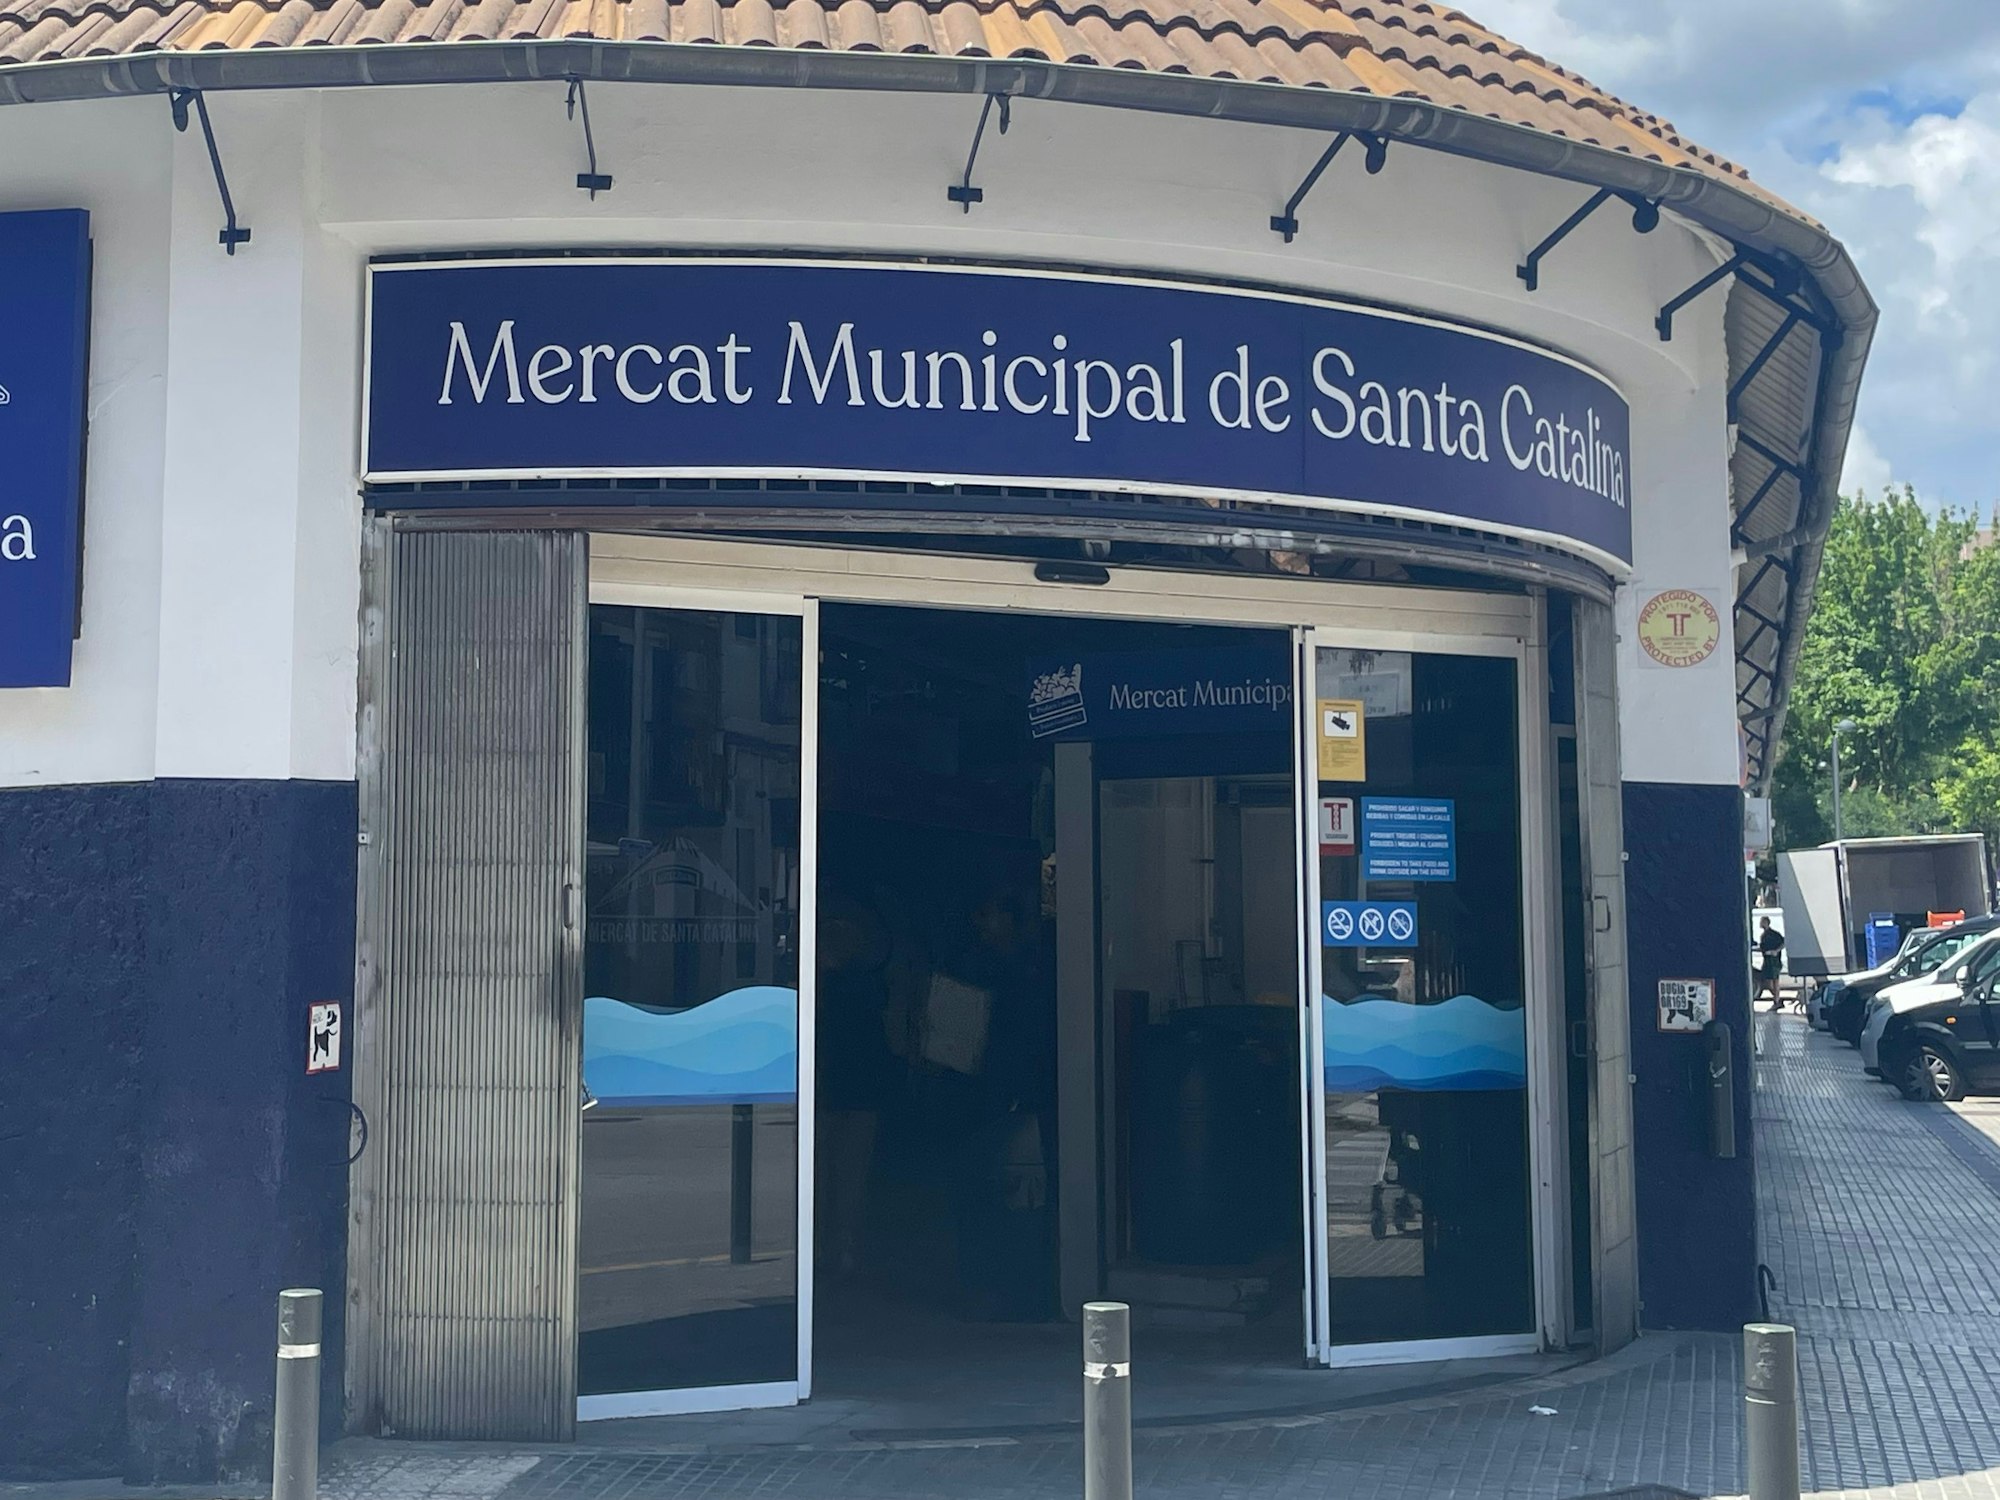 Der „Mercat Minicipal de Santa Catalina“ in dem Stadtteil Santa Catalina in Palma de Mallorca.